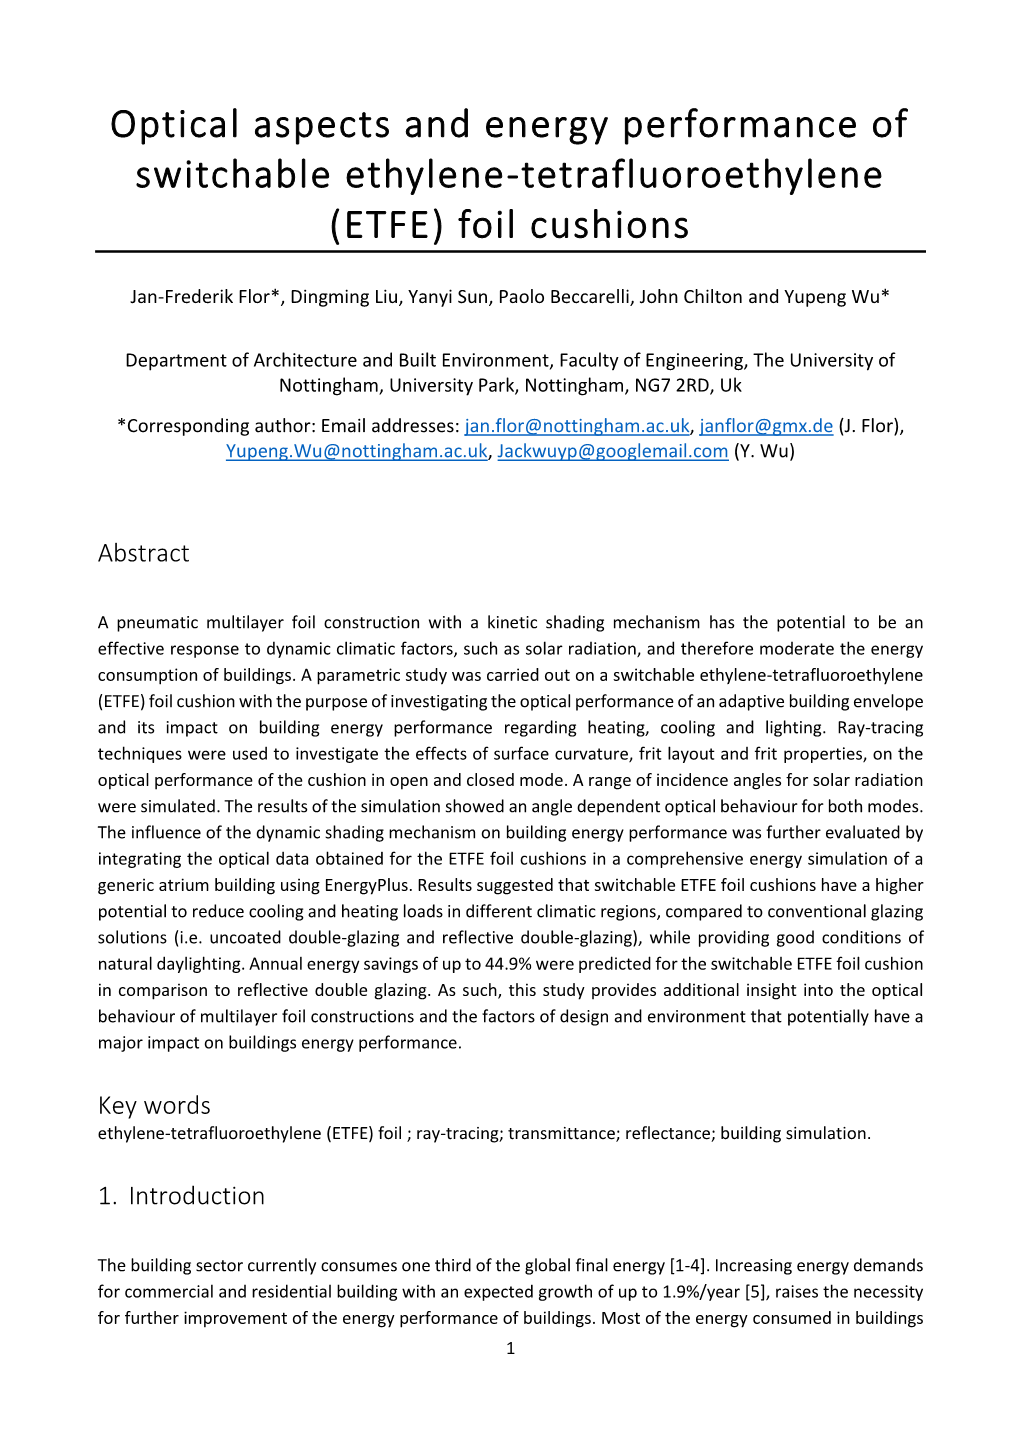 Optical Aspects and Energy Performance of Switchable Ethylene-Tetrafluoroethylene (ETFE) Foil Cushions